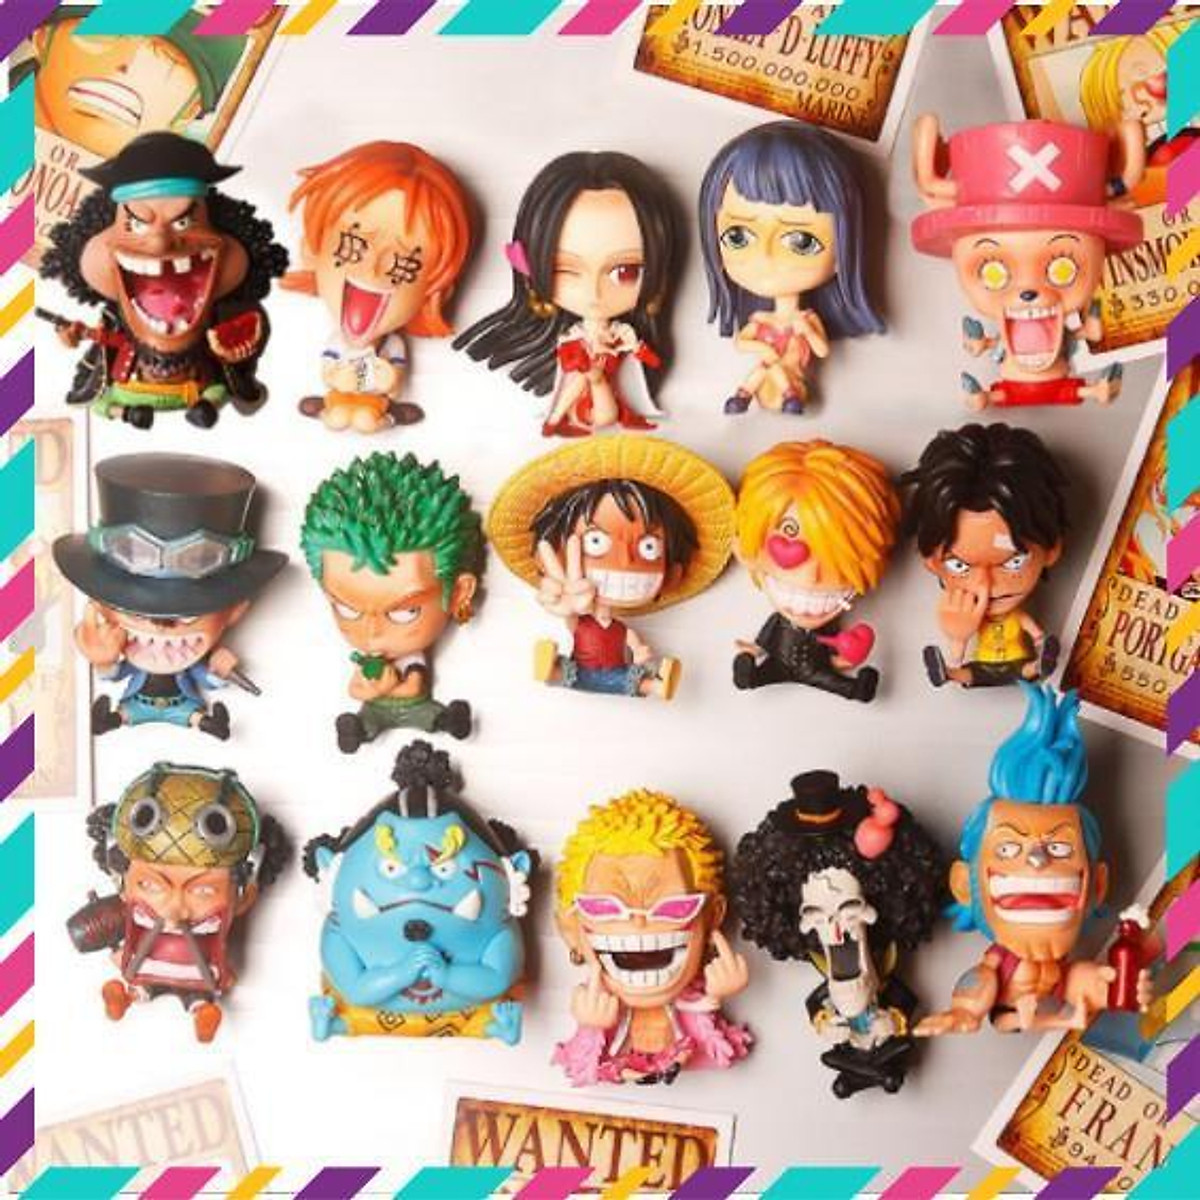 Mô hình chibi các nhân vật One Piece Đảo hải tặc siêu dễ thương như Luffy  Zoro Nami Kaido Shanks Robin Sanji Usopp Boa  Lazadavn